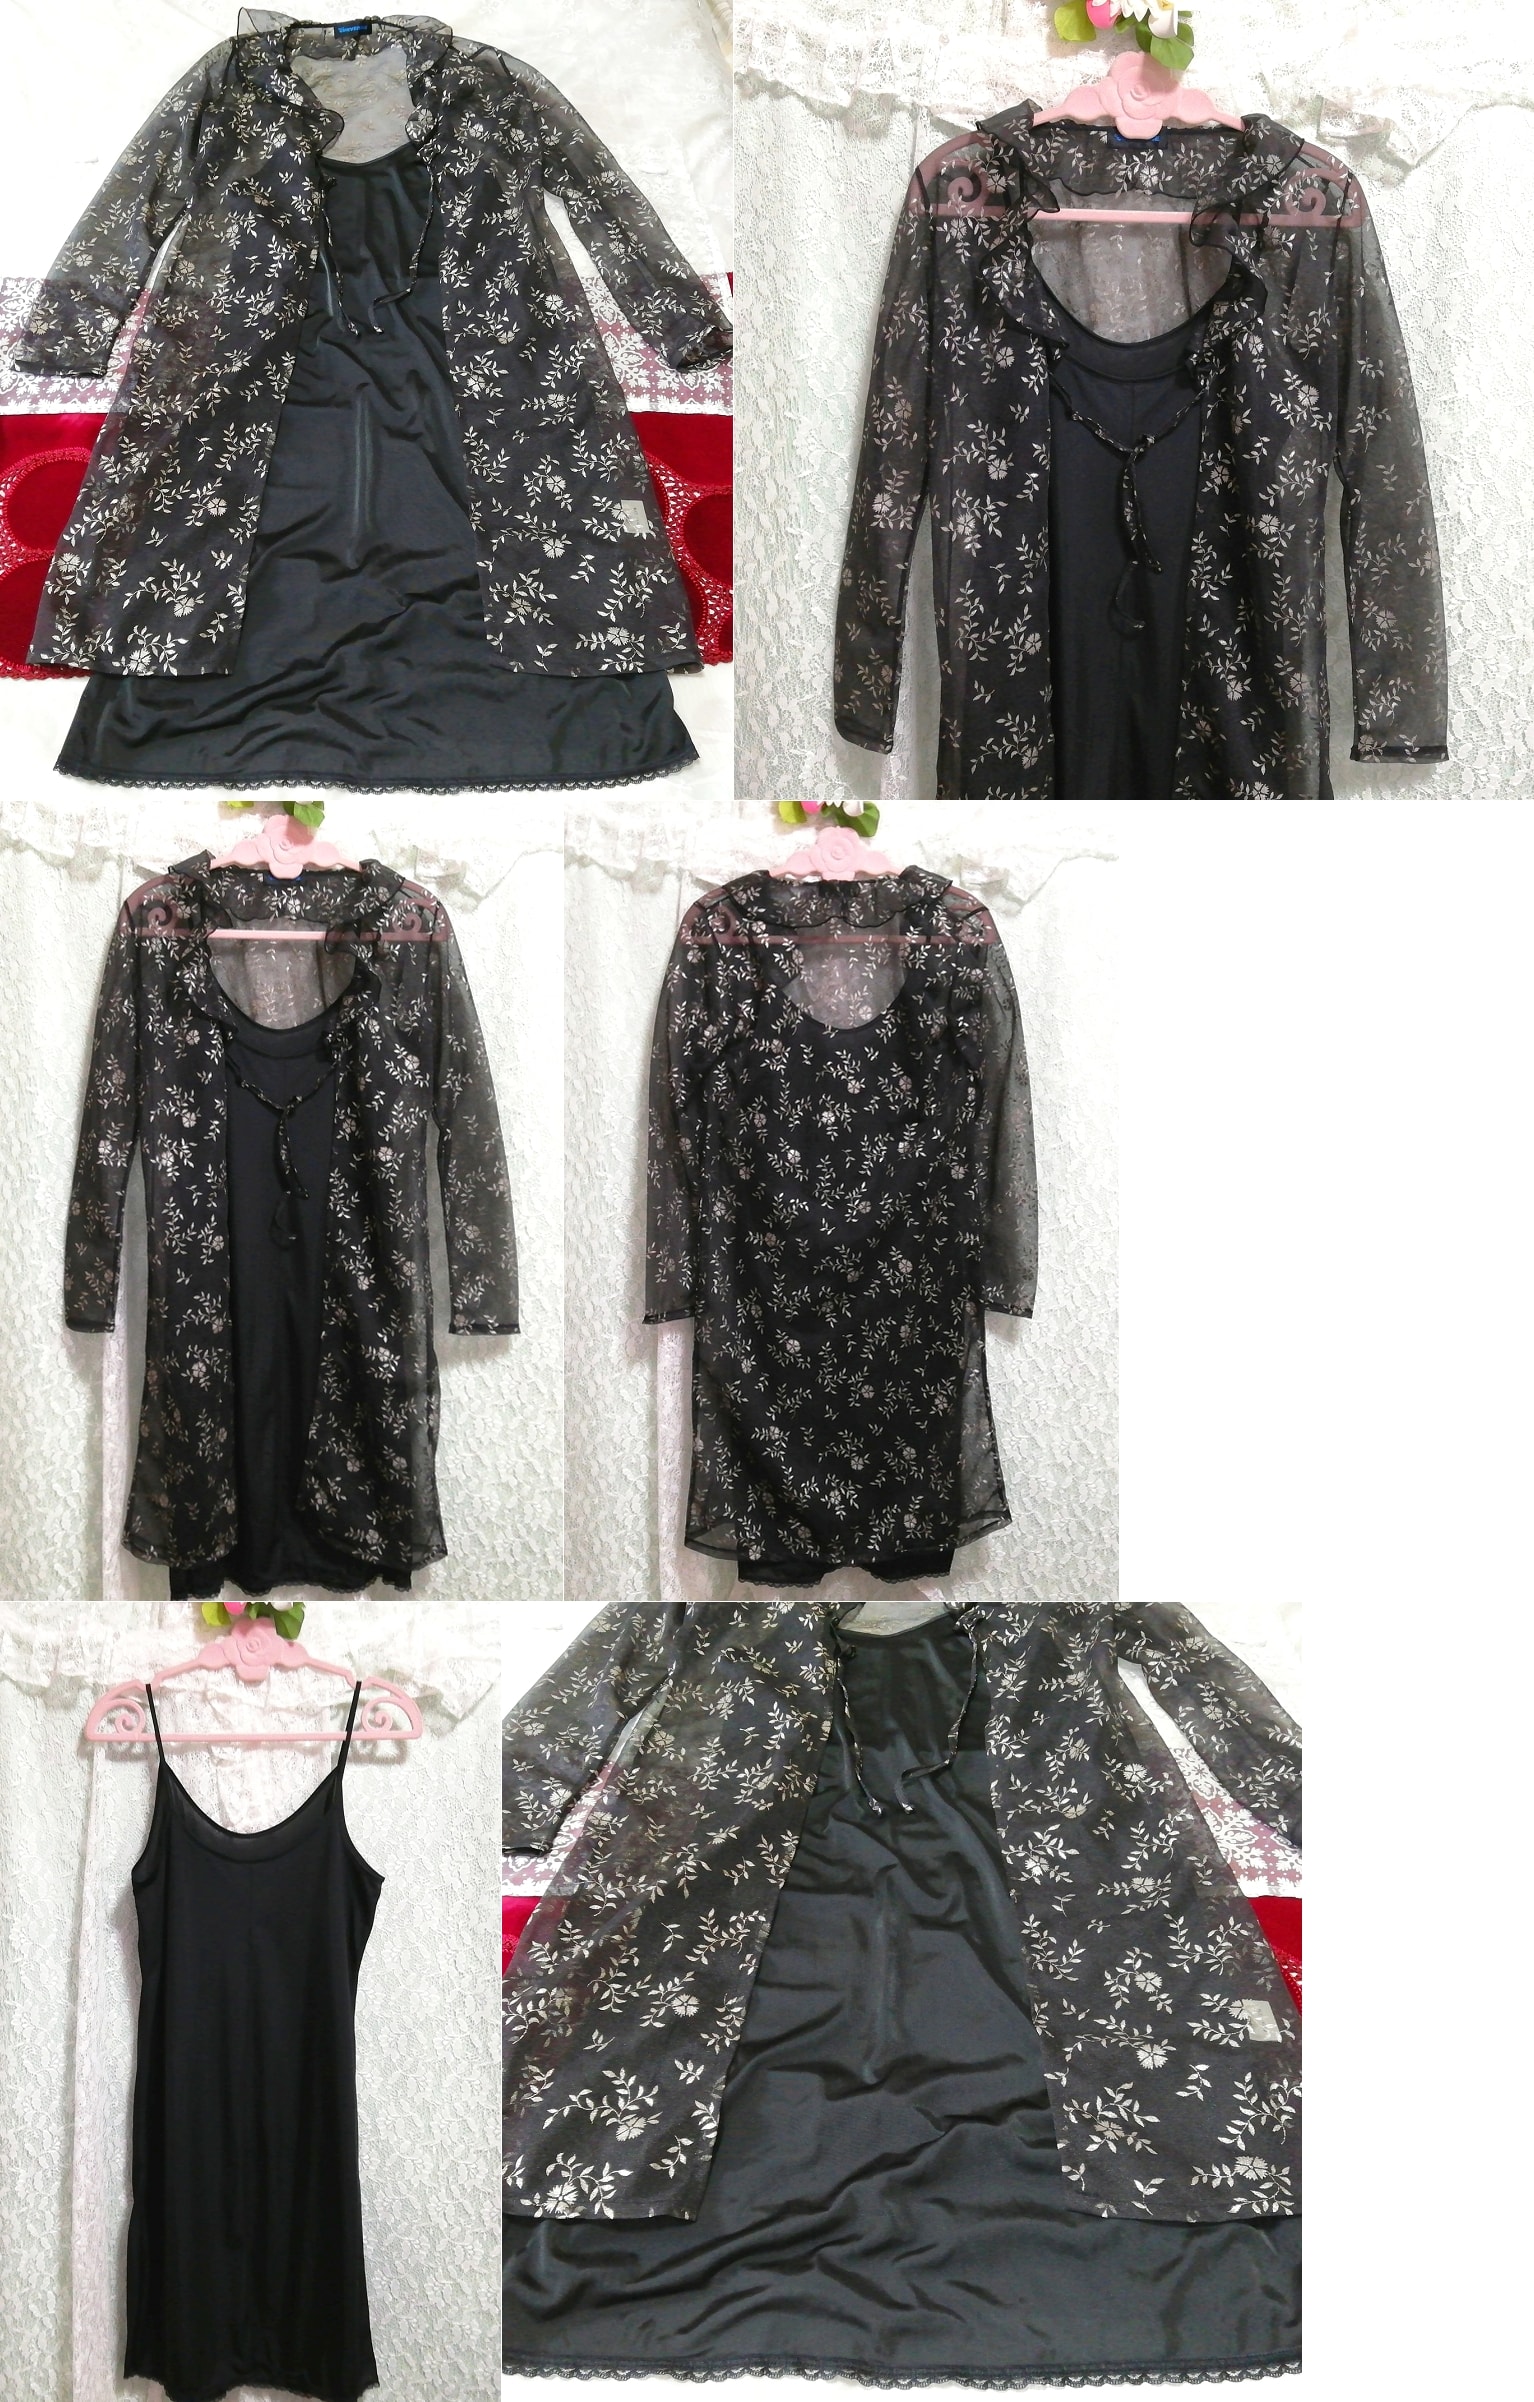 黑色透明罩衫睡衣吊带背心娃娃装连衣裙 2 件, 时尚, 女士时装, 睡衣